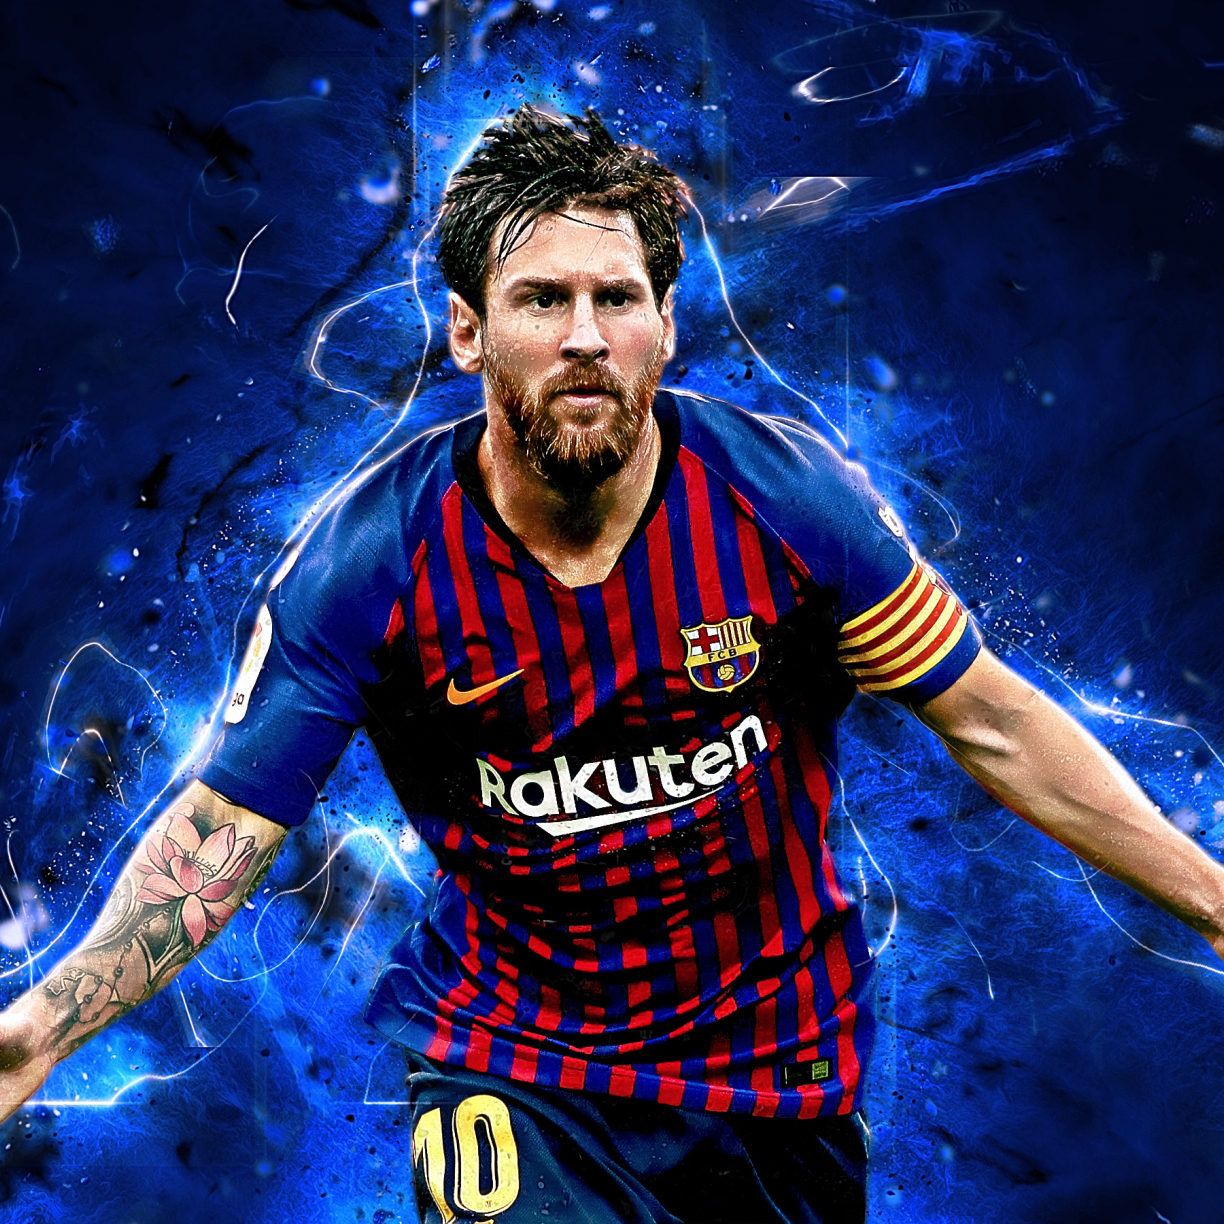 Đồng hành cùng nghệ thuật, cầu thủ bóng đá, và ngôi sao, hình nền Lionel Messi đem lại sự hoàn hảo cho điện thoại của bạn. Với những tác phẩm nghệ thuật tràn đầy sức sống, bạn sẽ được chiêm ngưỡng vẻ đẹp của một ngôi sao bóng đá đích thực.